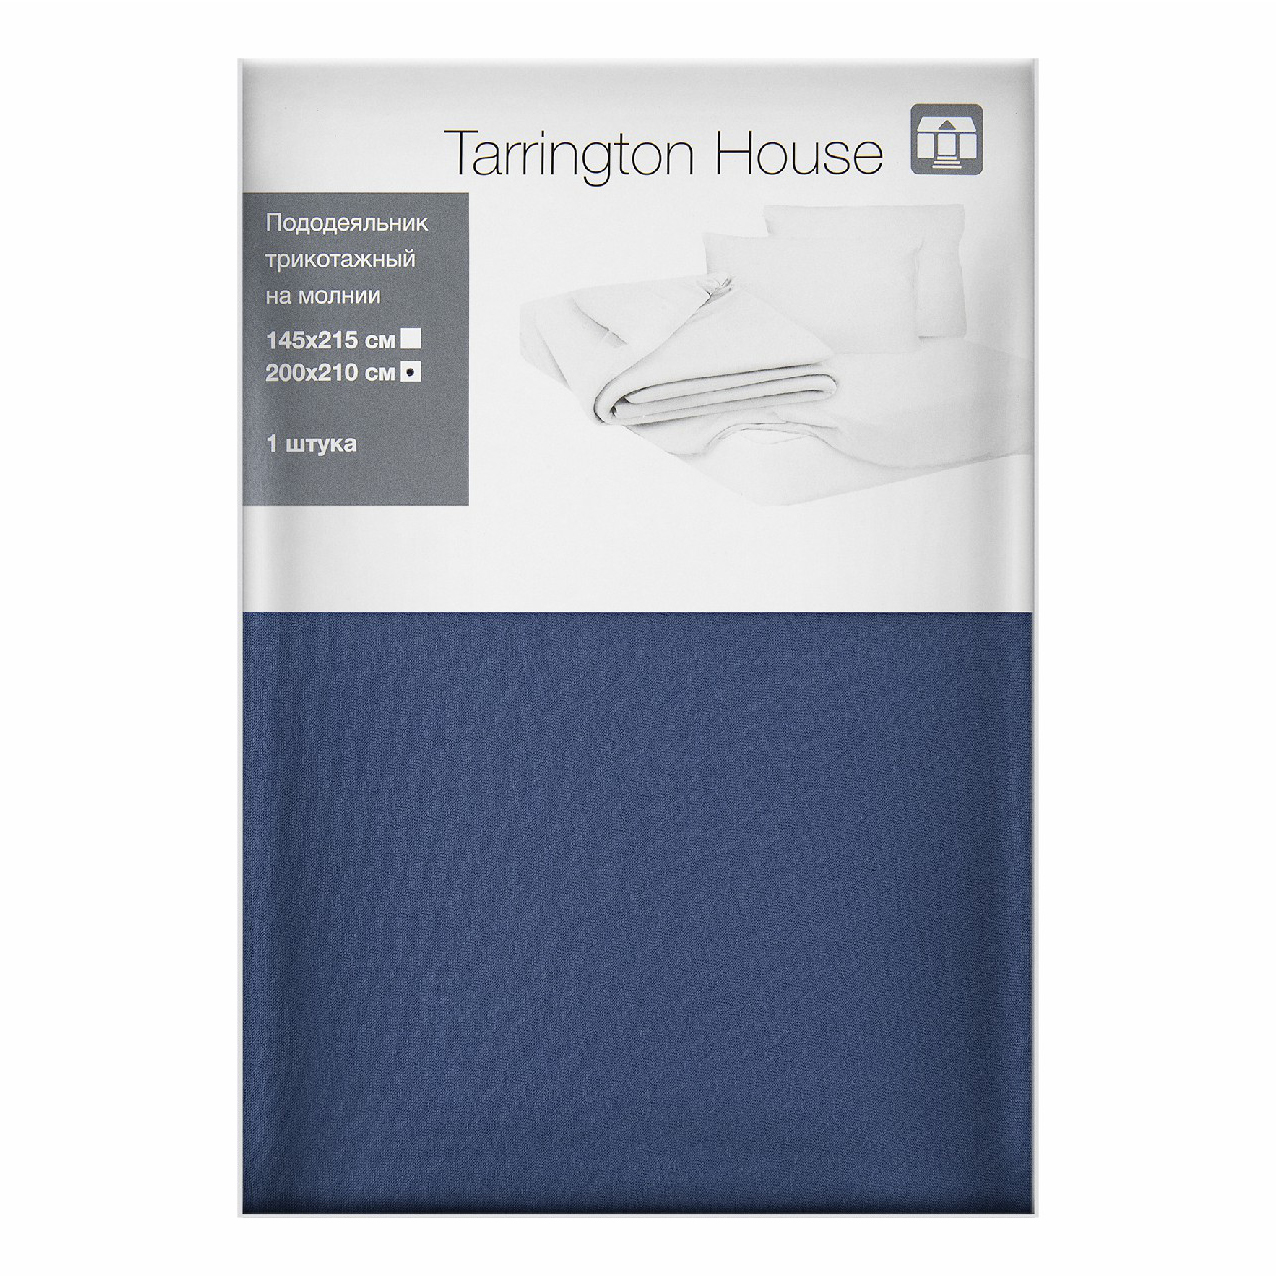 Пододеяльник Tarrington House 200x210 см трикотаж синий